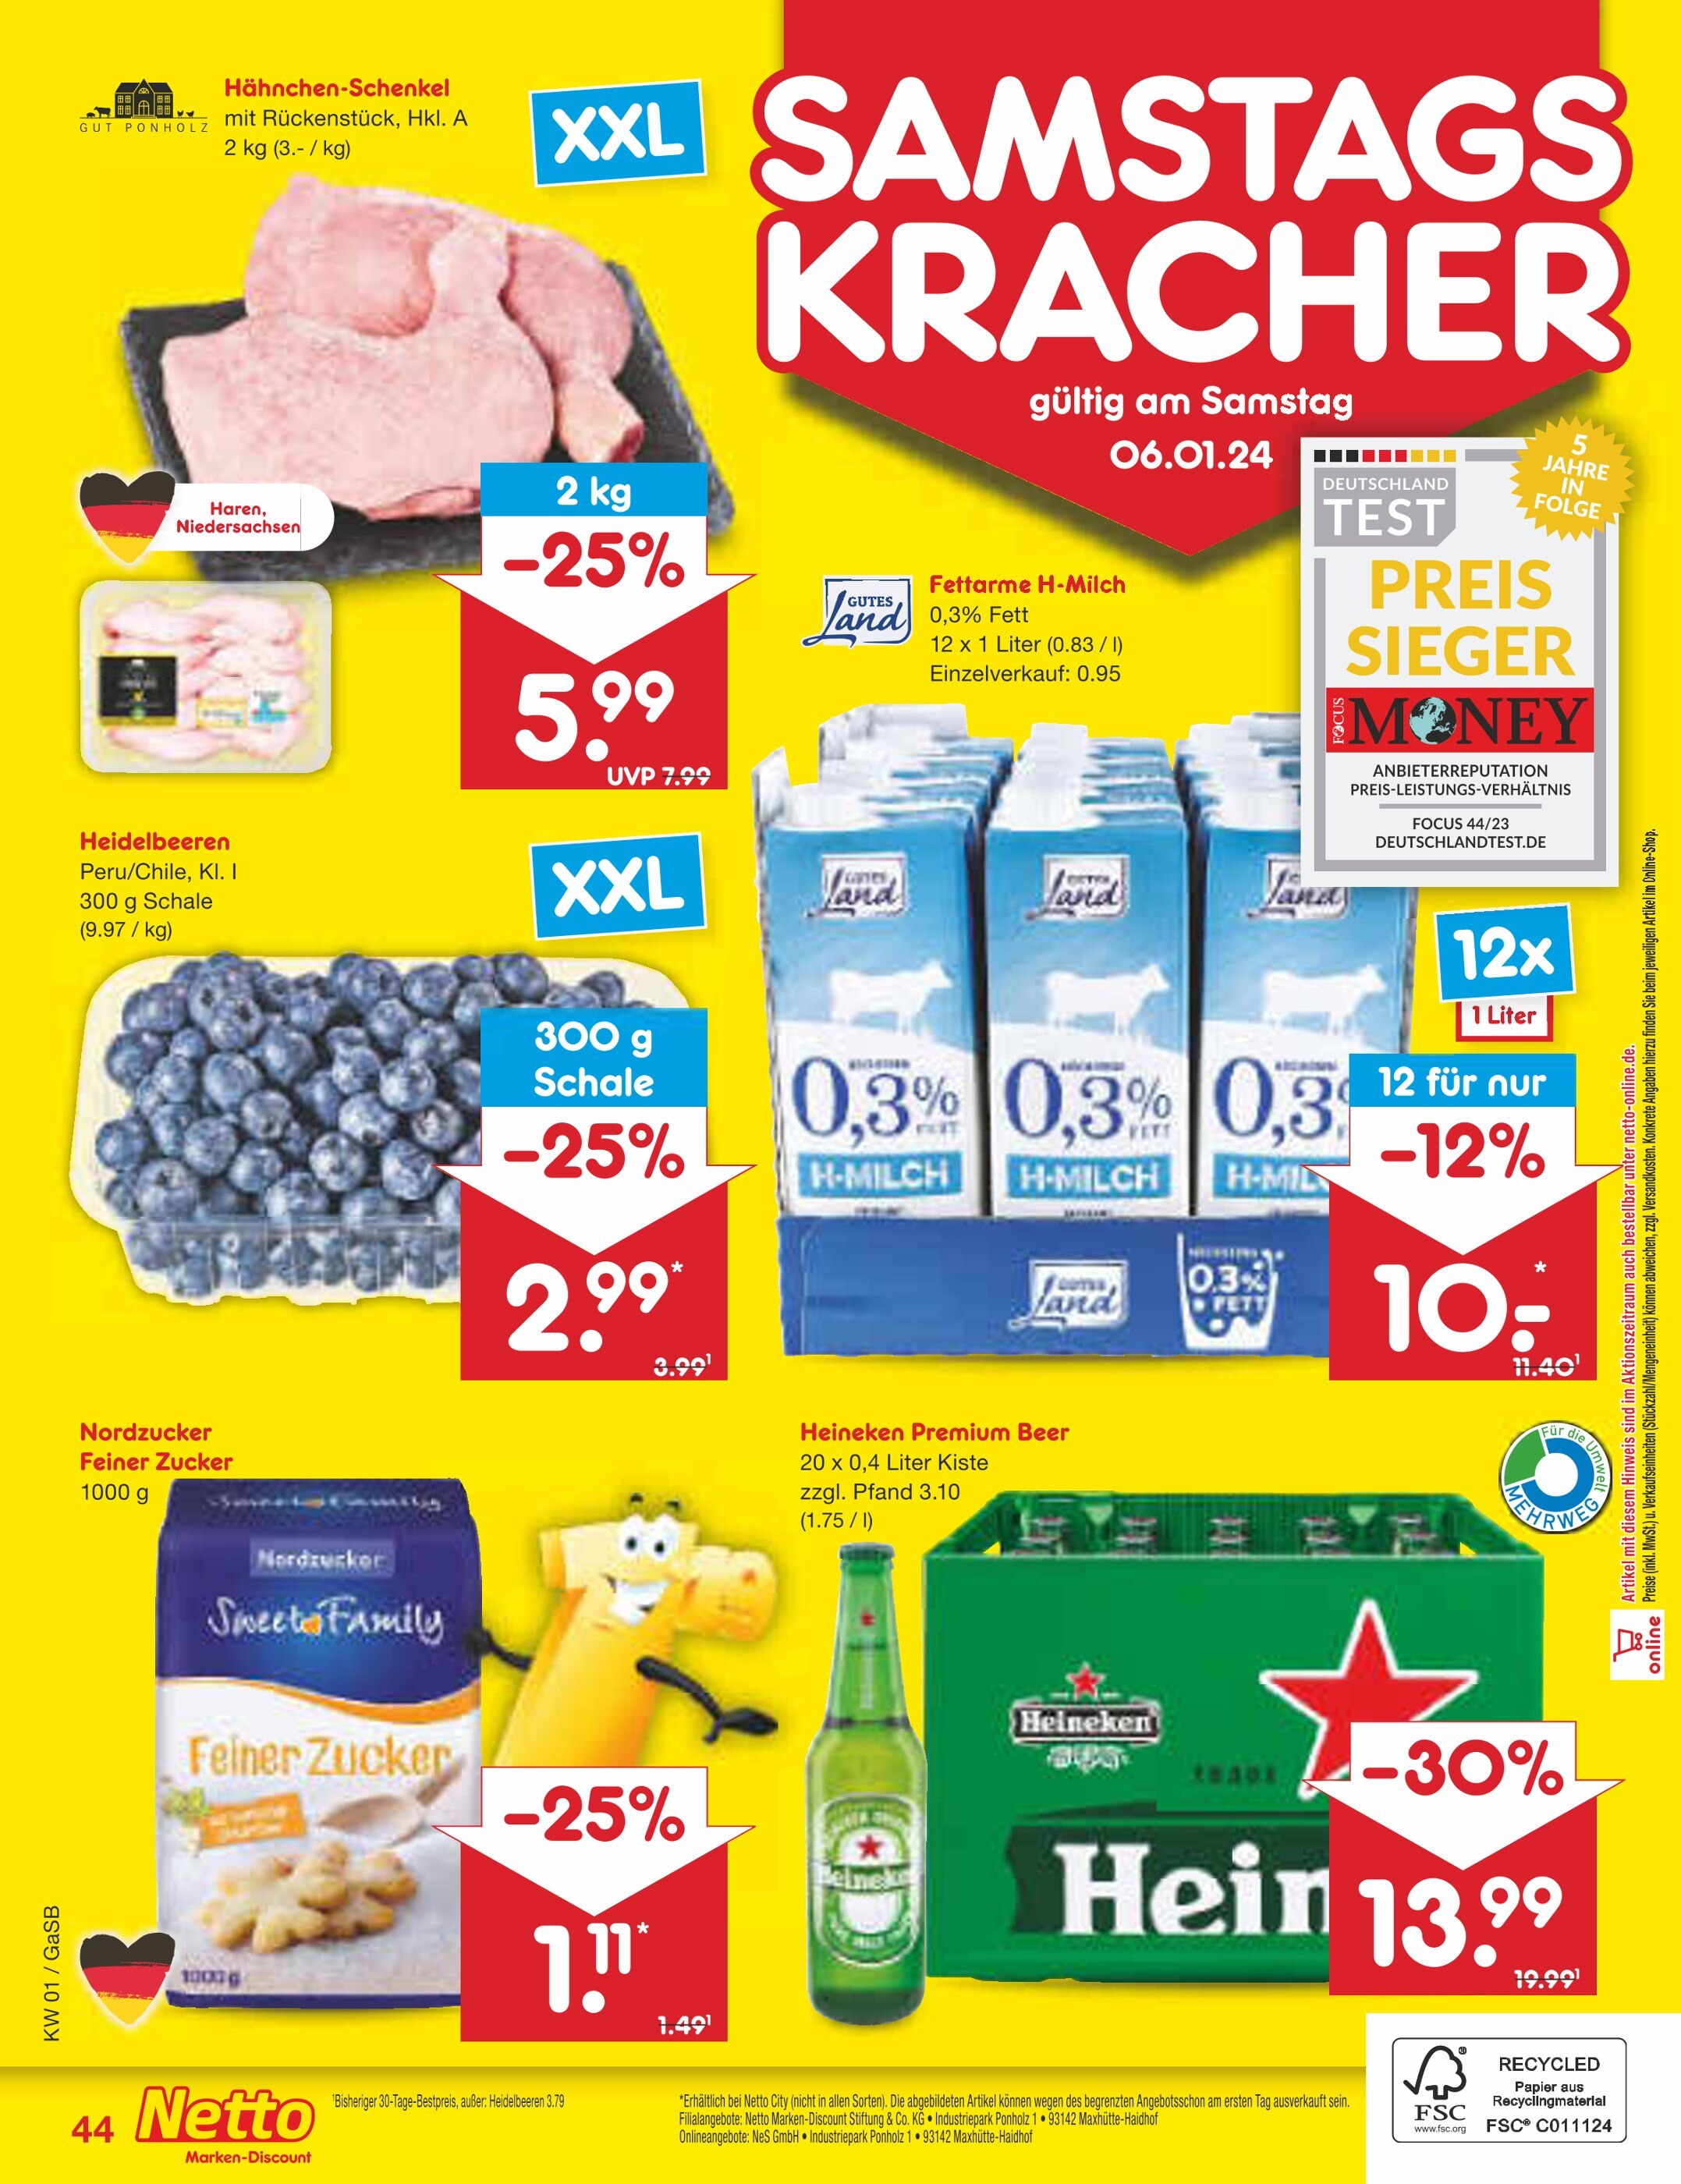 Hähnchen Angebote in Bremerhaven - jetzt günstig kaufen! 🔥